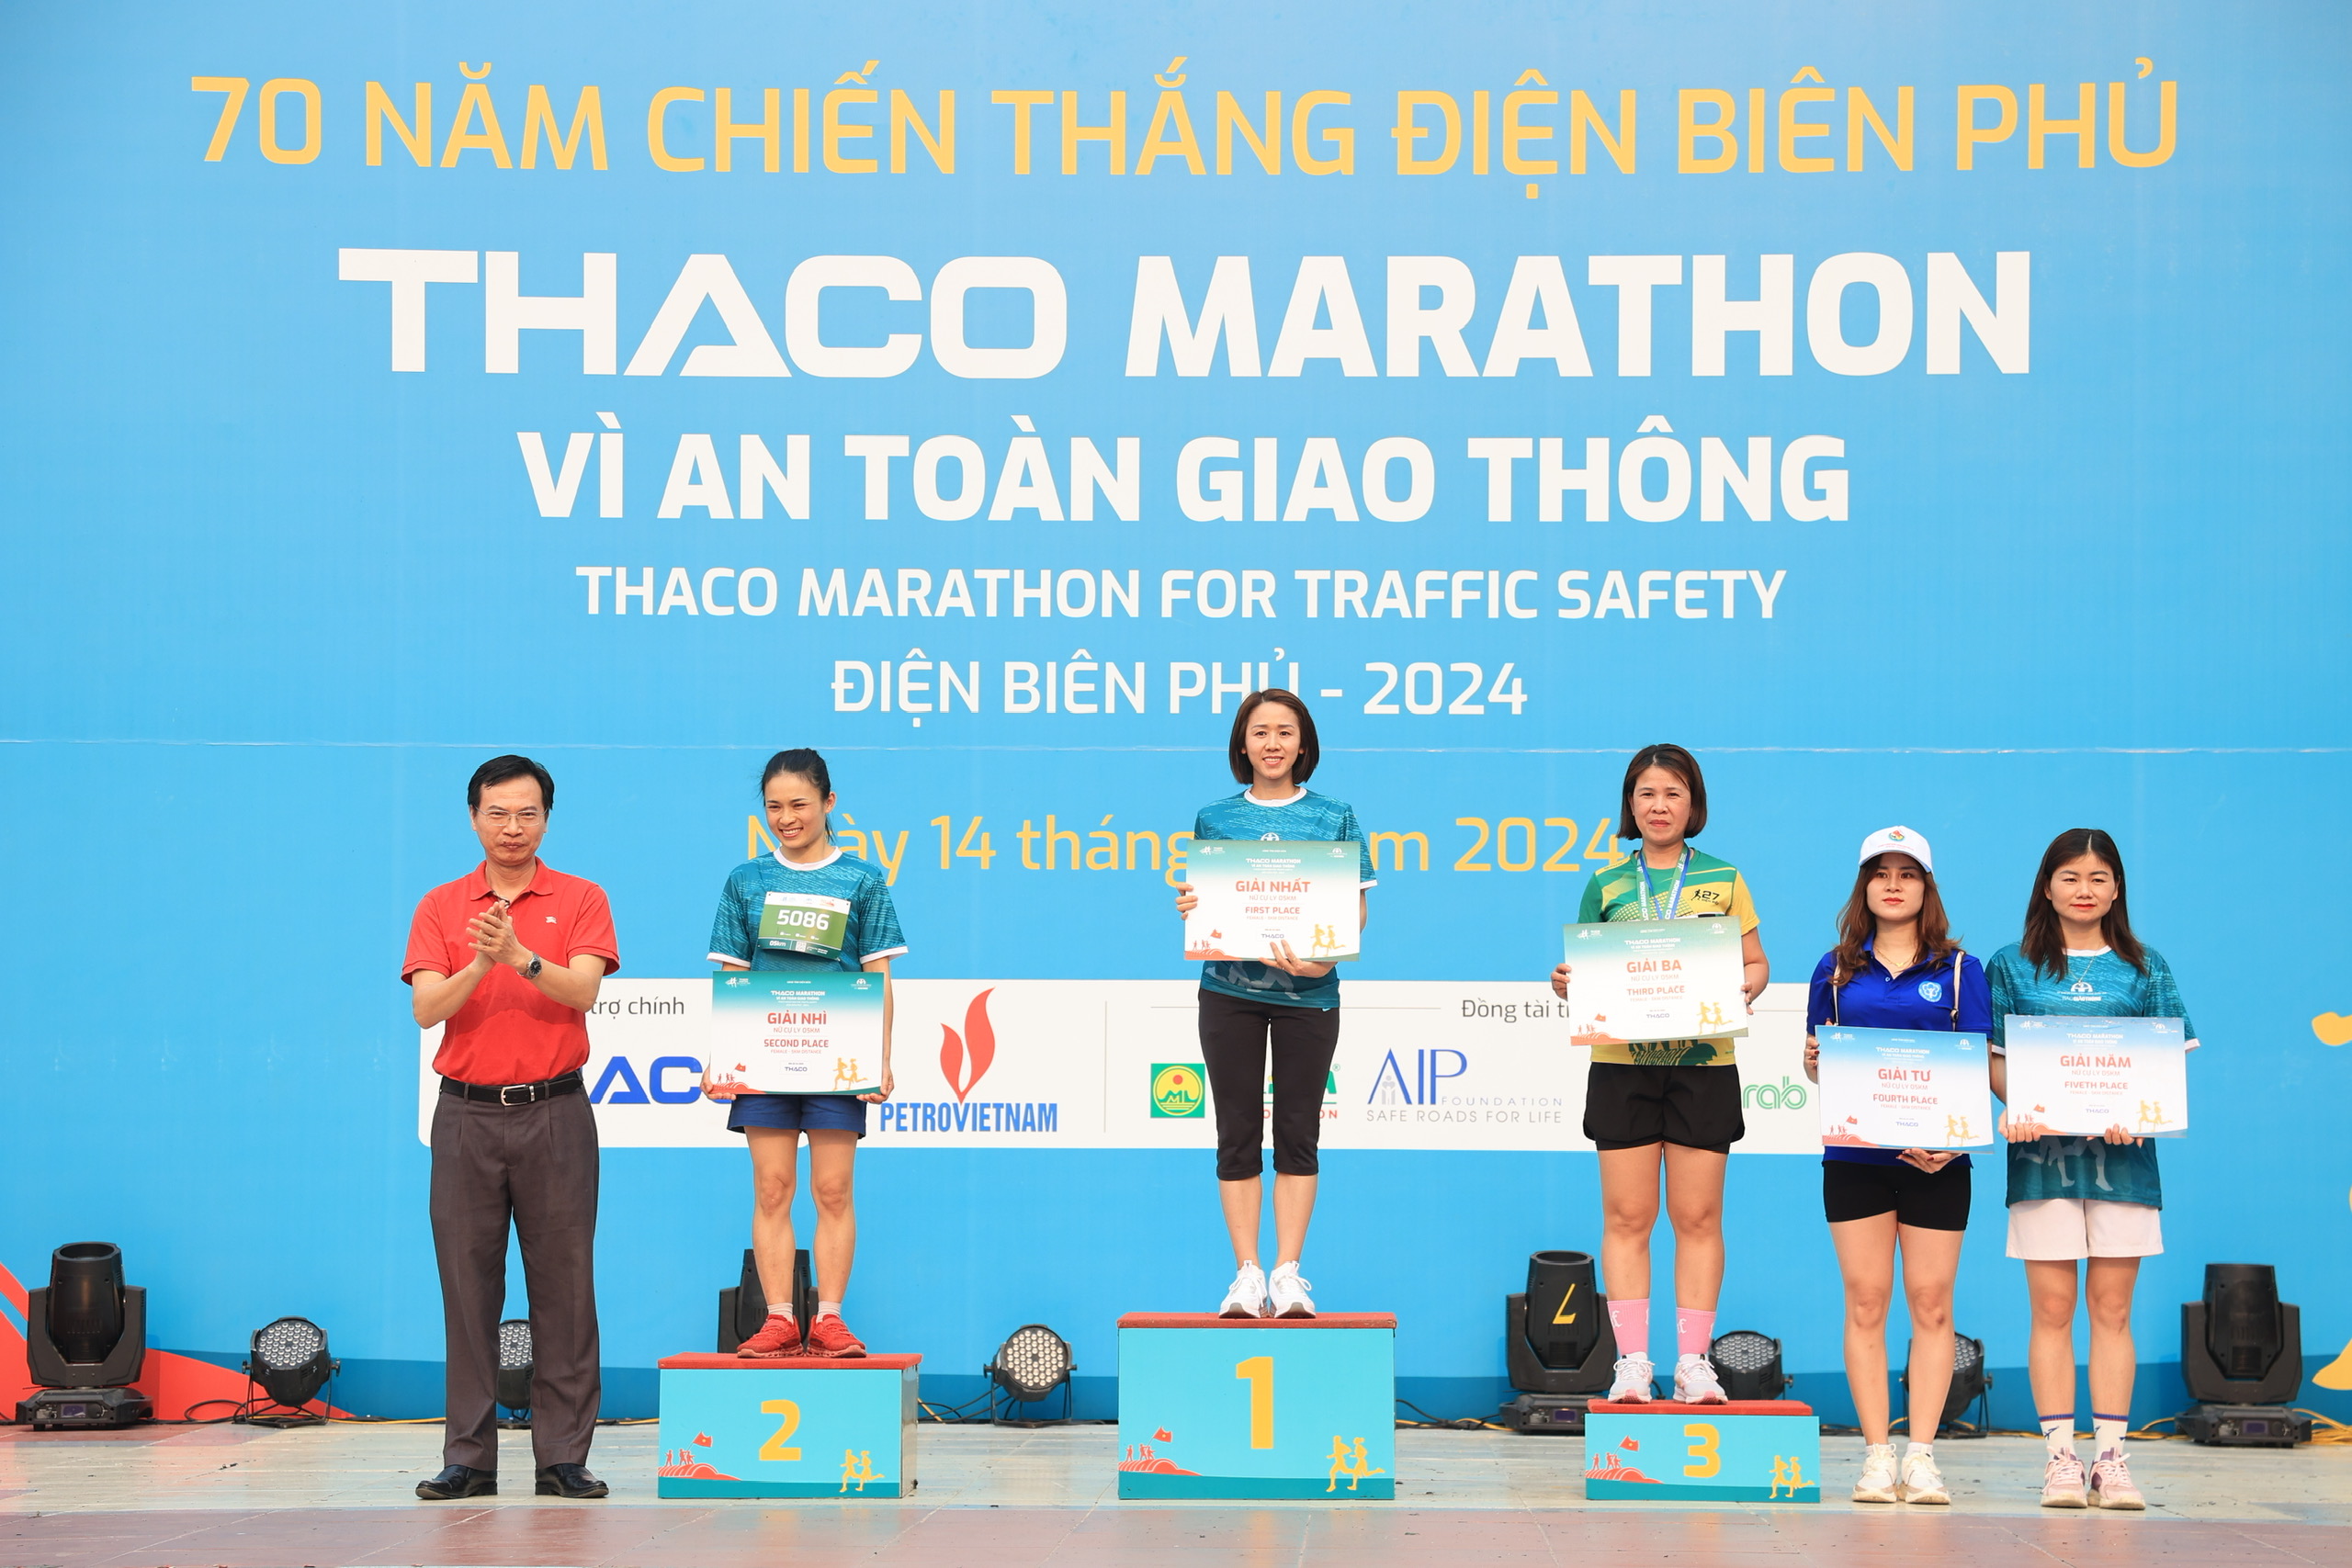 Trực tiếp: Giải THACO Marathon vì ATGT - Điện Biên Phủ 2024 thành công rực rỡ- Ảnh 12.